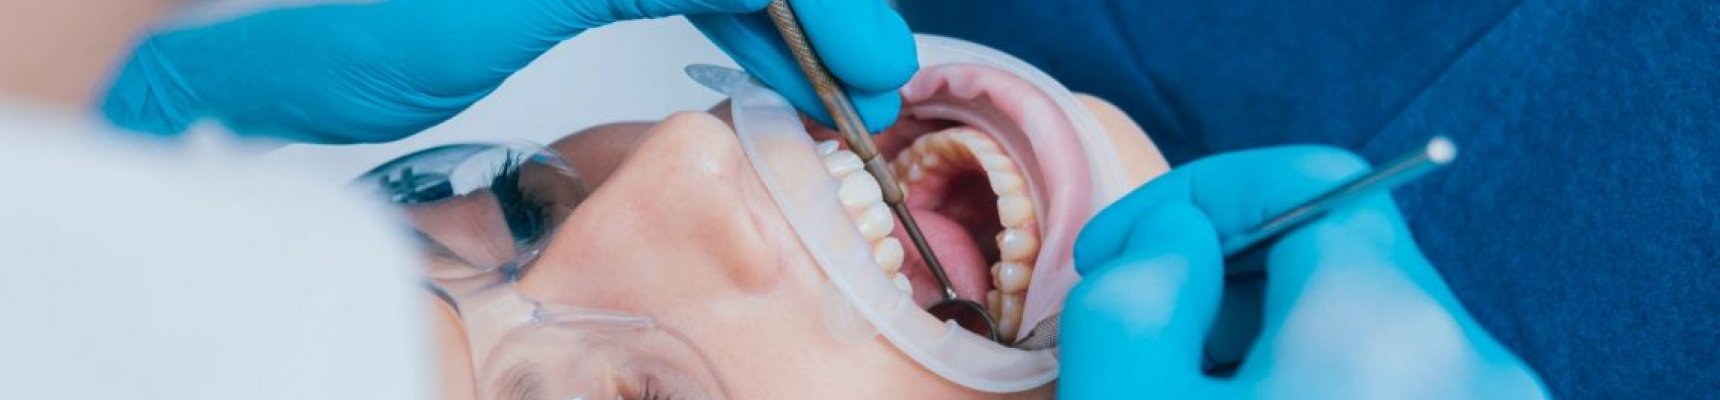 Claude Monet cabinet dentaire Dr Nguyen traitement implantologie